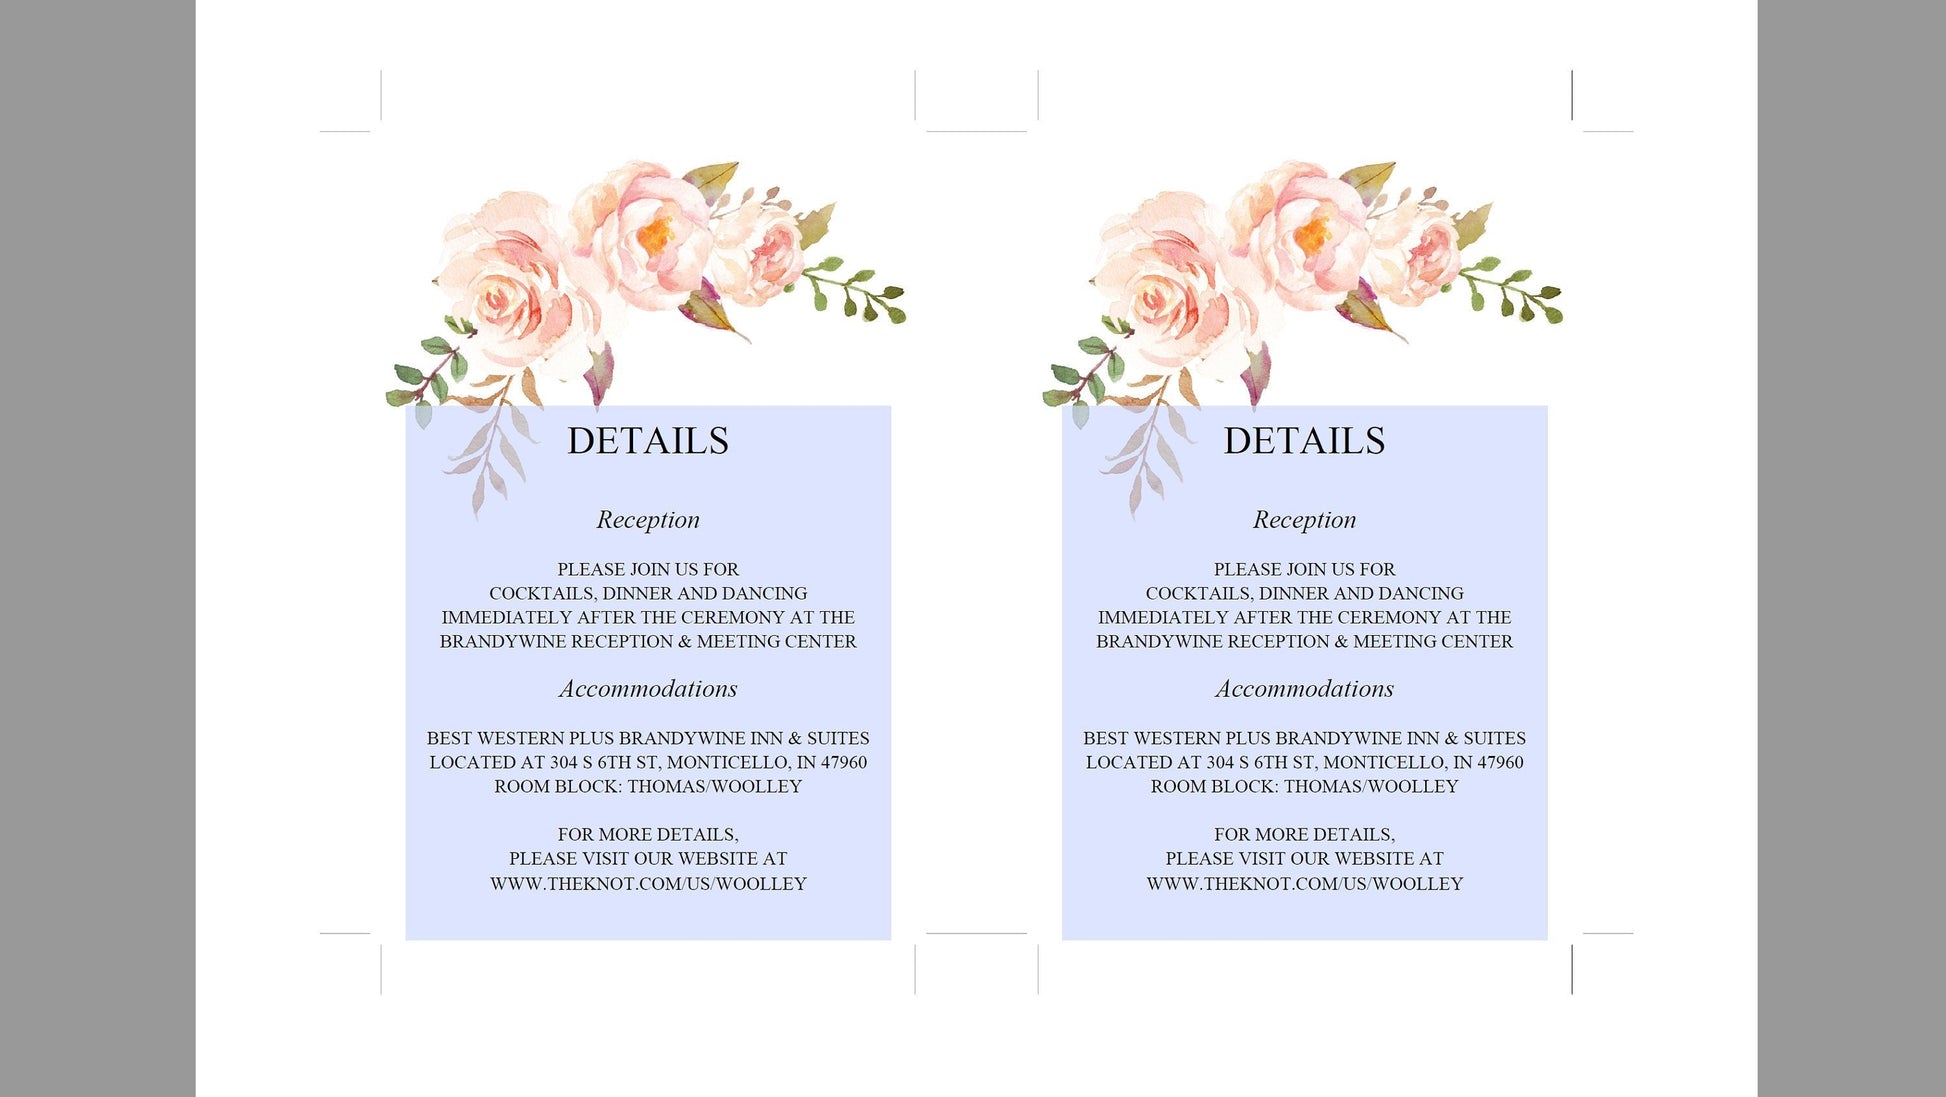 Wedding Details Card Template, Instant Download, Information Card, Wedding Info Card,Details Template, Floral, Blush  - KATHERINE RSVP & DETAILS CARDS SAVVY PAPER CO